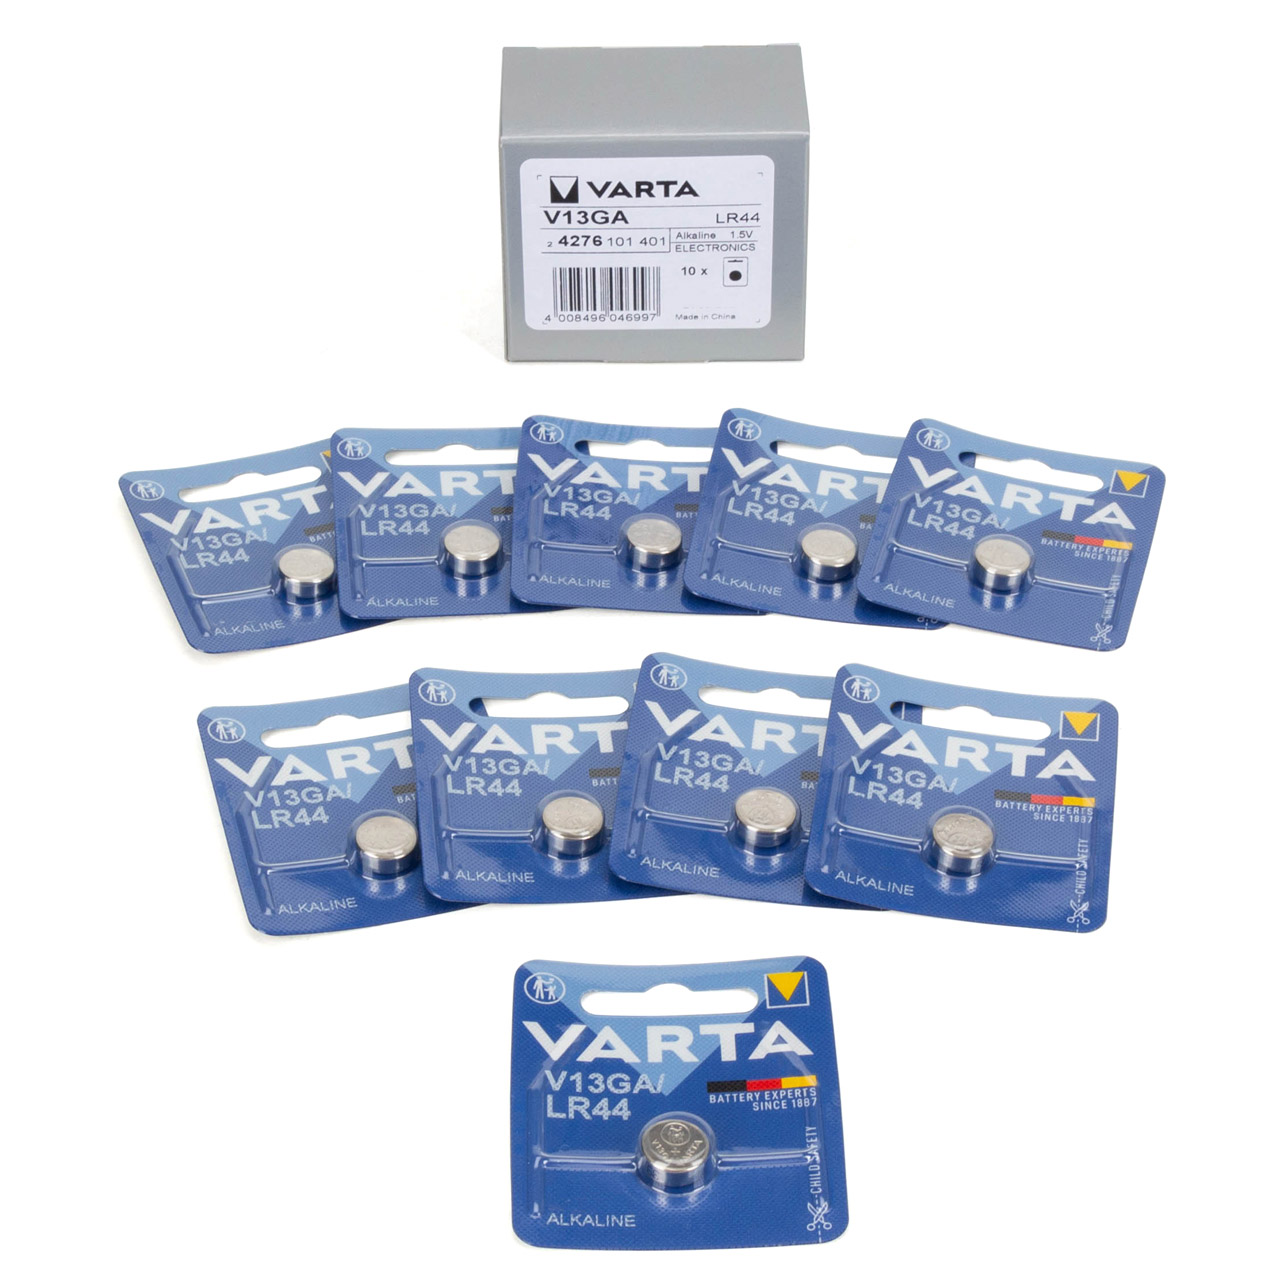 10x VARTA 1,5V VG13GA LR44 Knopfzelle Knopfbatterie Batterie (MHD 03.2027)